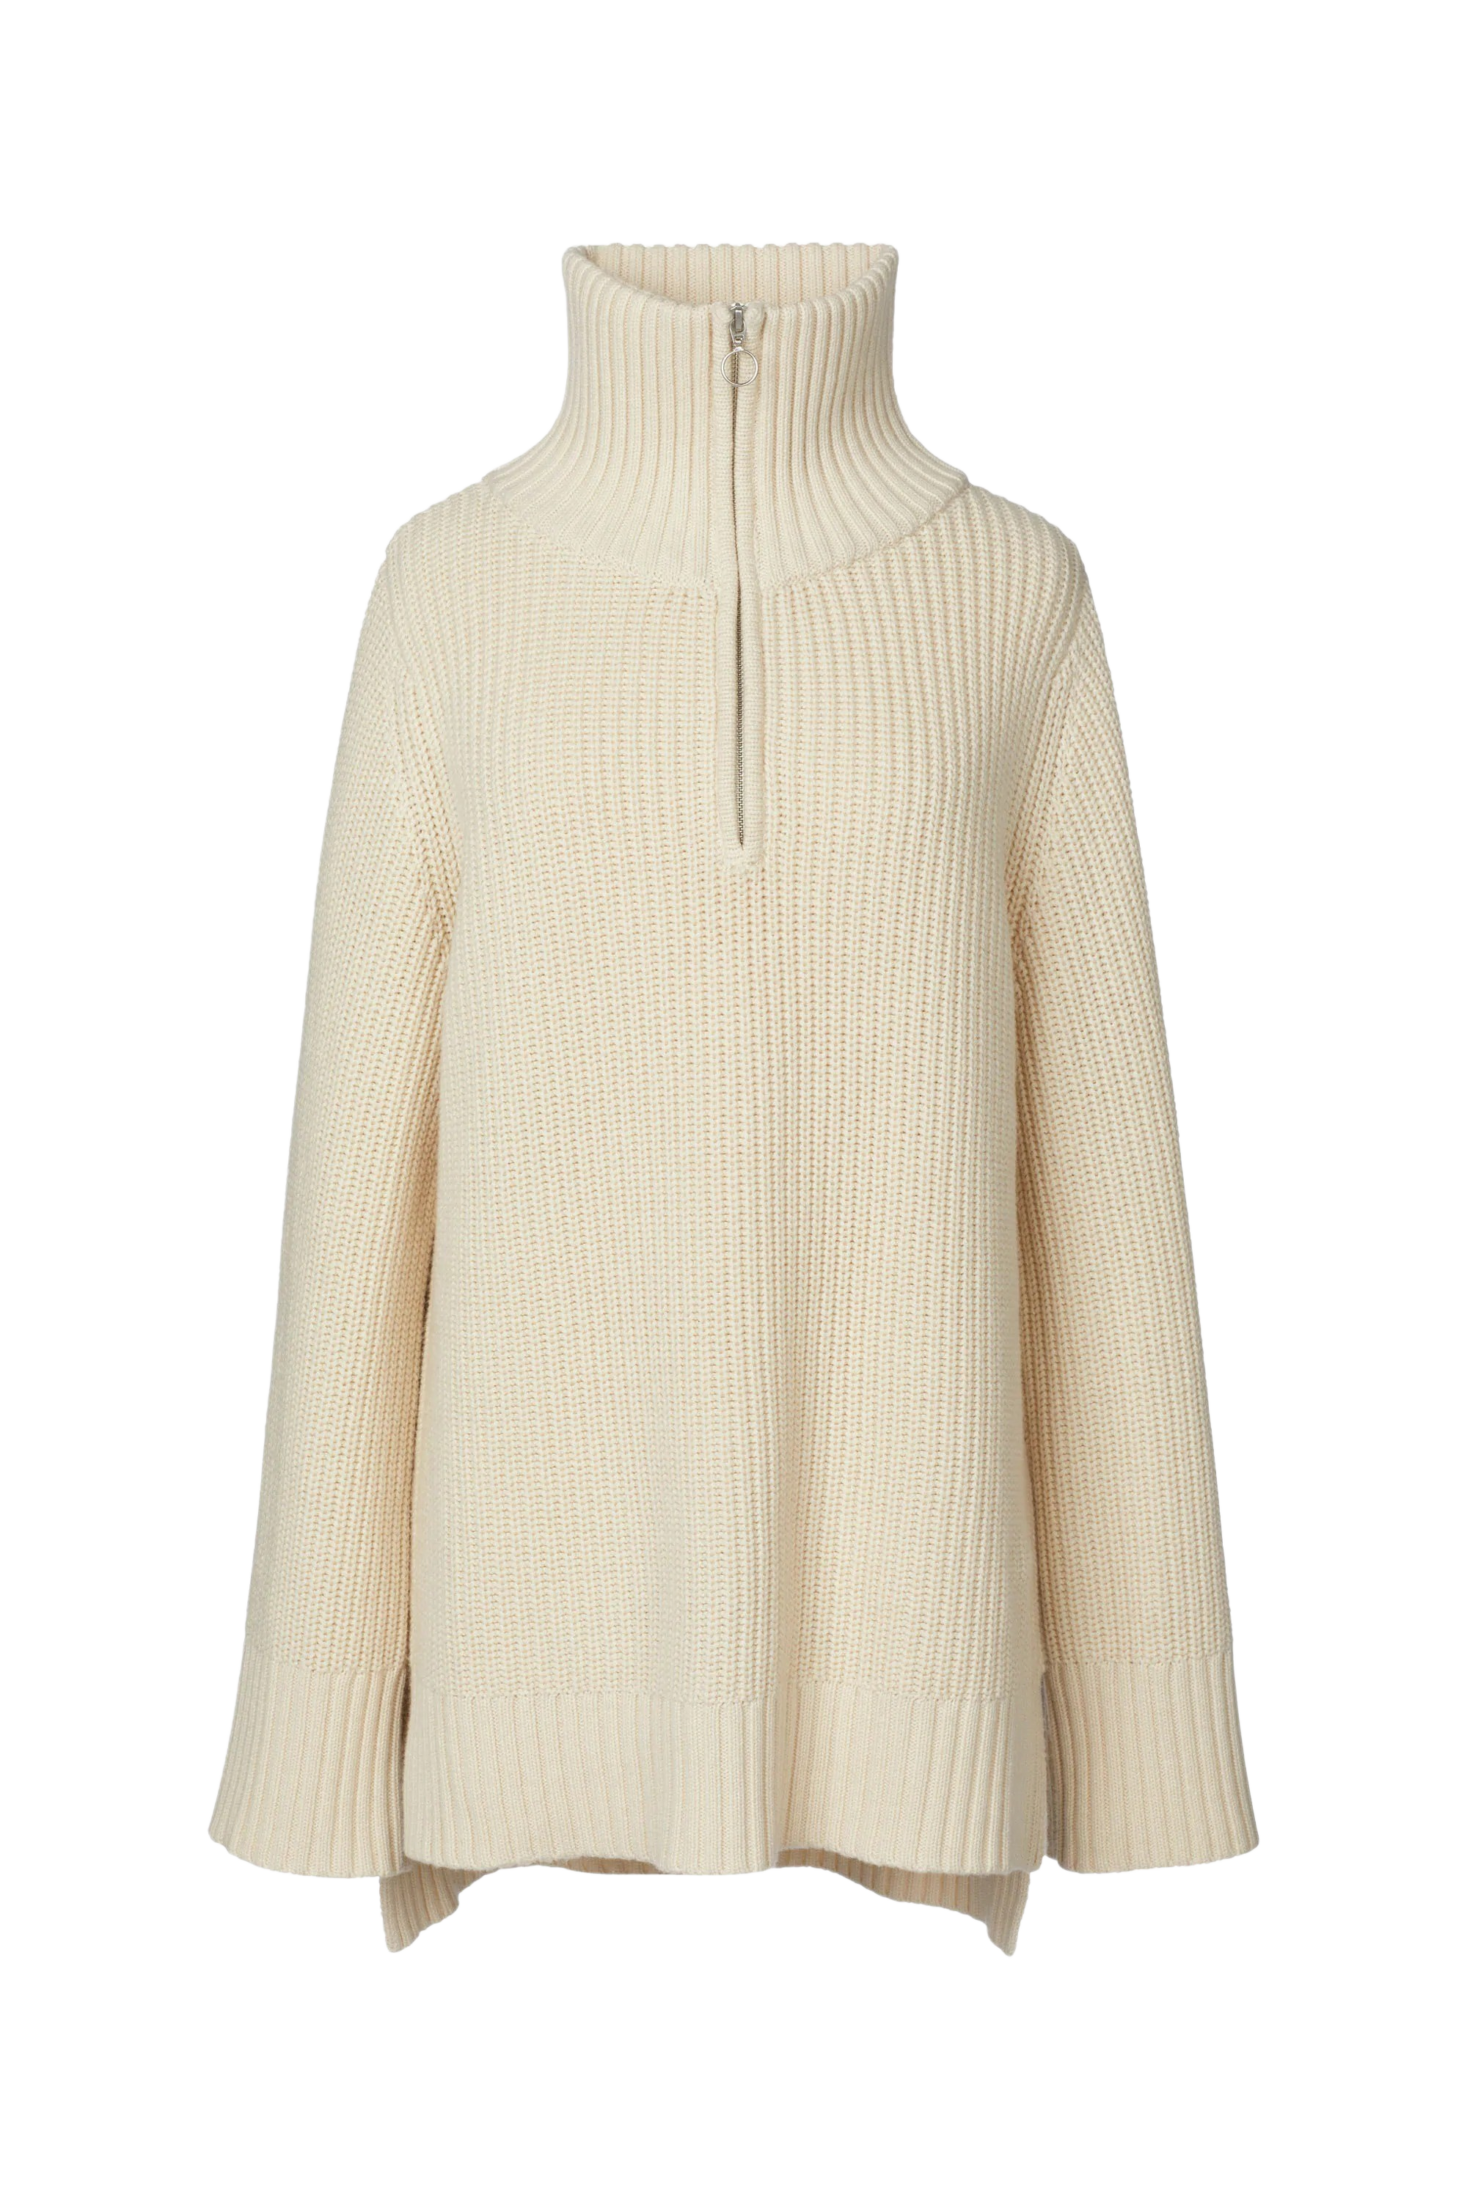 stylein-minimalistic-scandinavian-timeless-swedish-design-womenswear-women-wear-classic-alain-sweater-knitwear-offwhite-wool-cotton-fw22-zipper